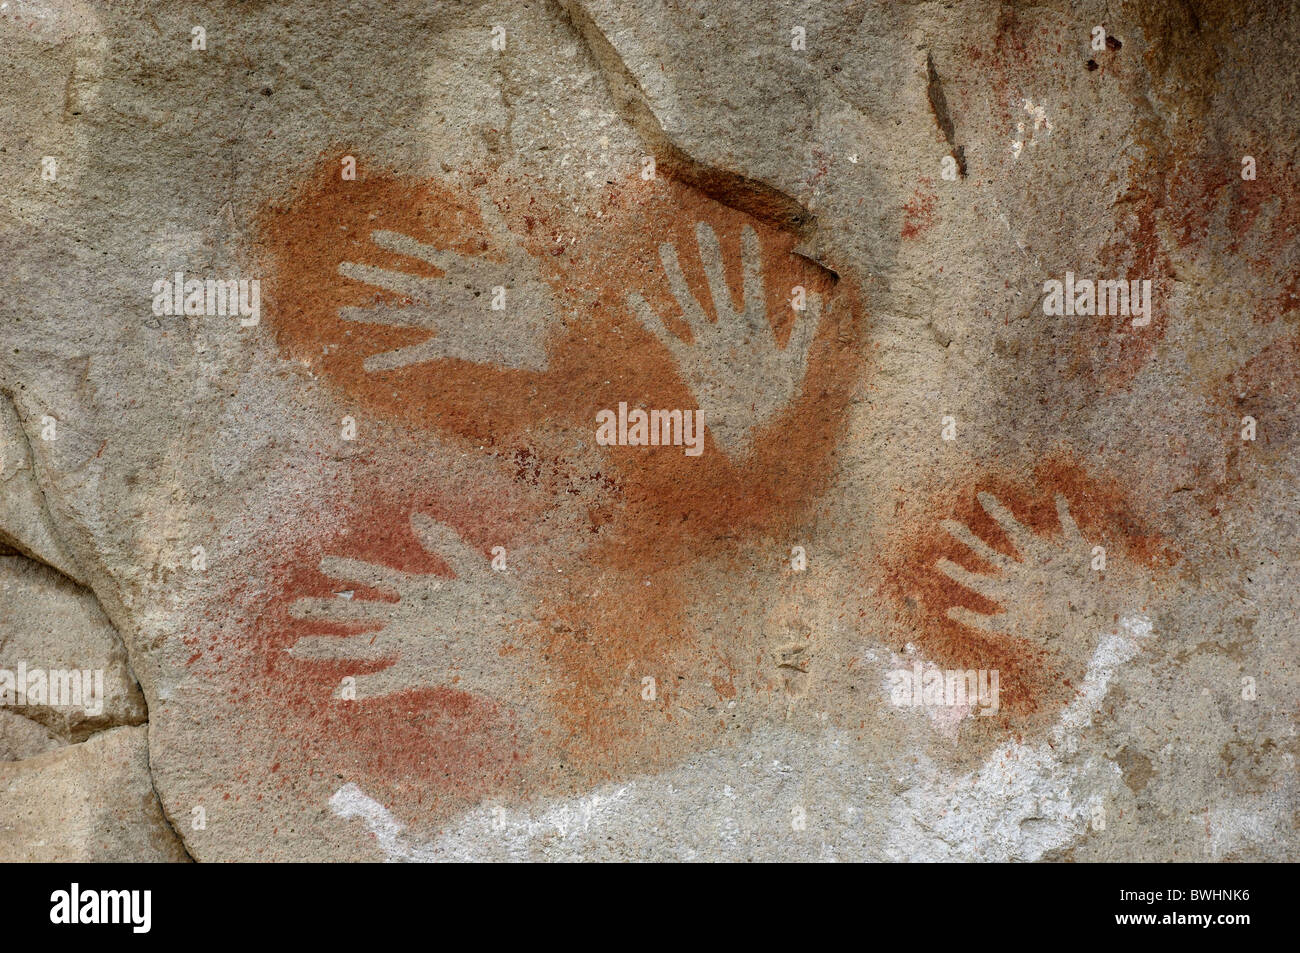 Cueva de las manos rock art paintings cave of hands near Perito Moreno Santa Cruz Patagonia Argentina South Am Stock Photo